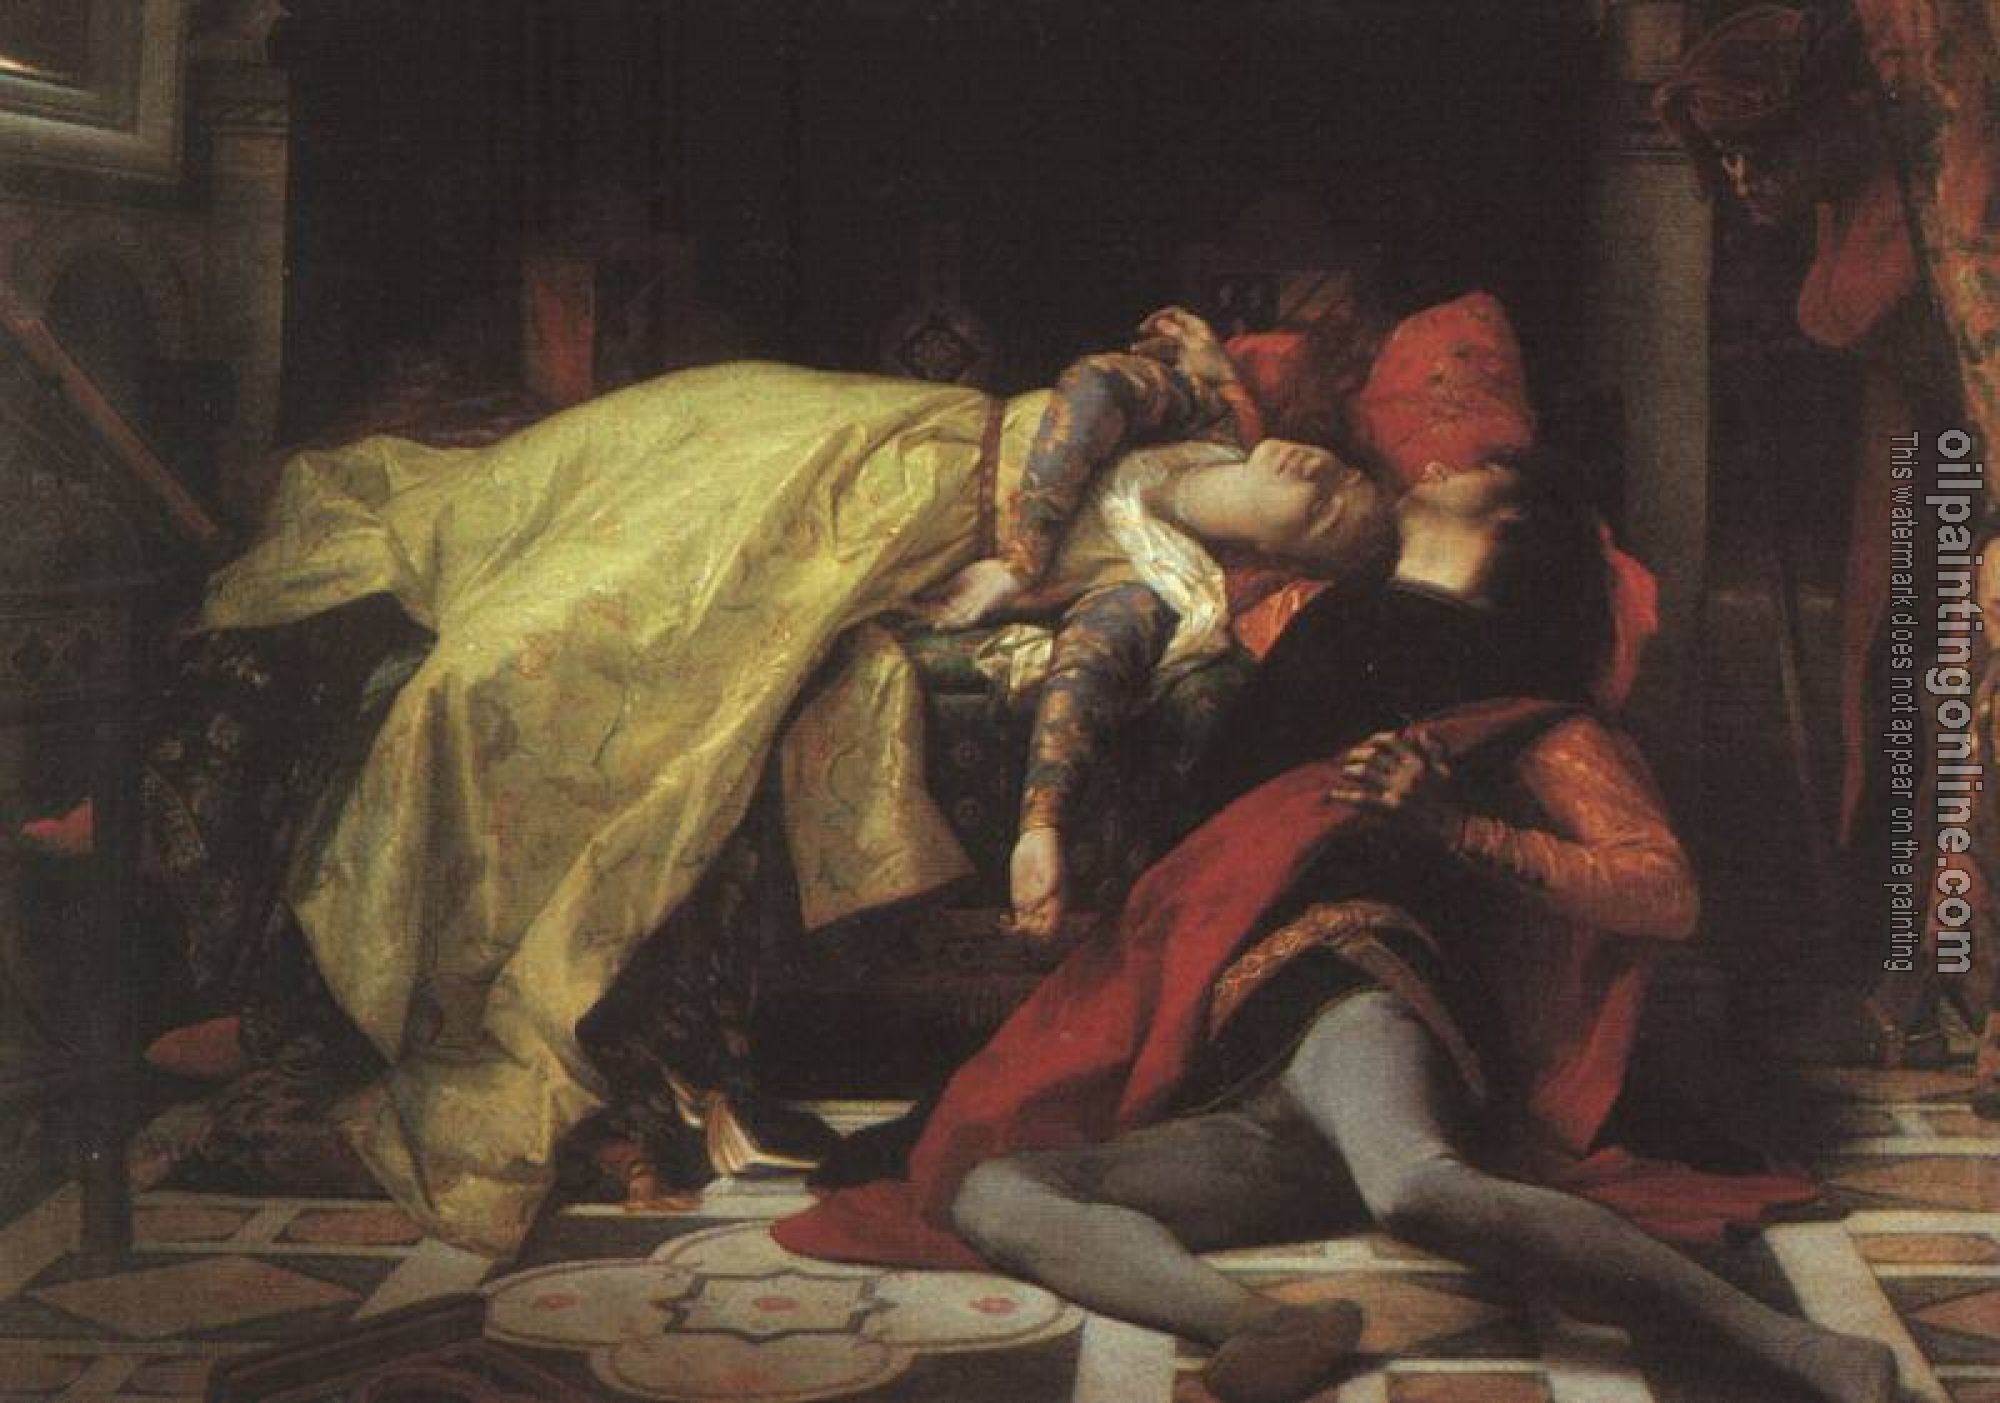 Alexandre Cabanel - The death of Francesca da Rimini and Paolo